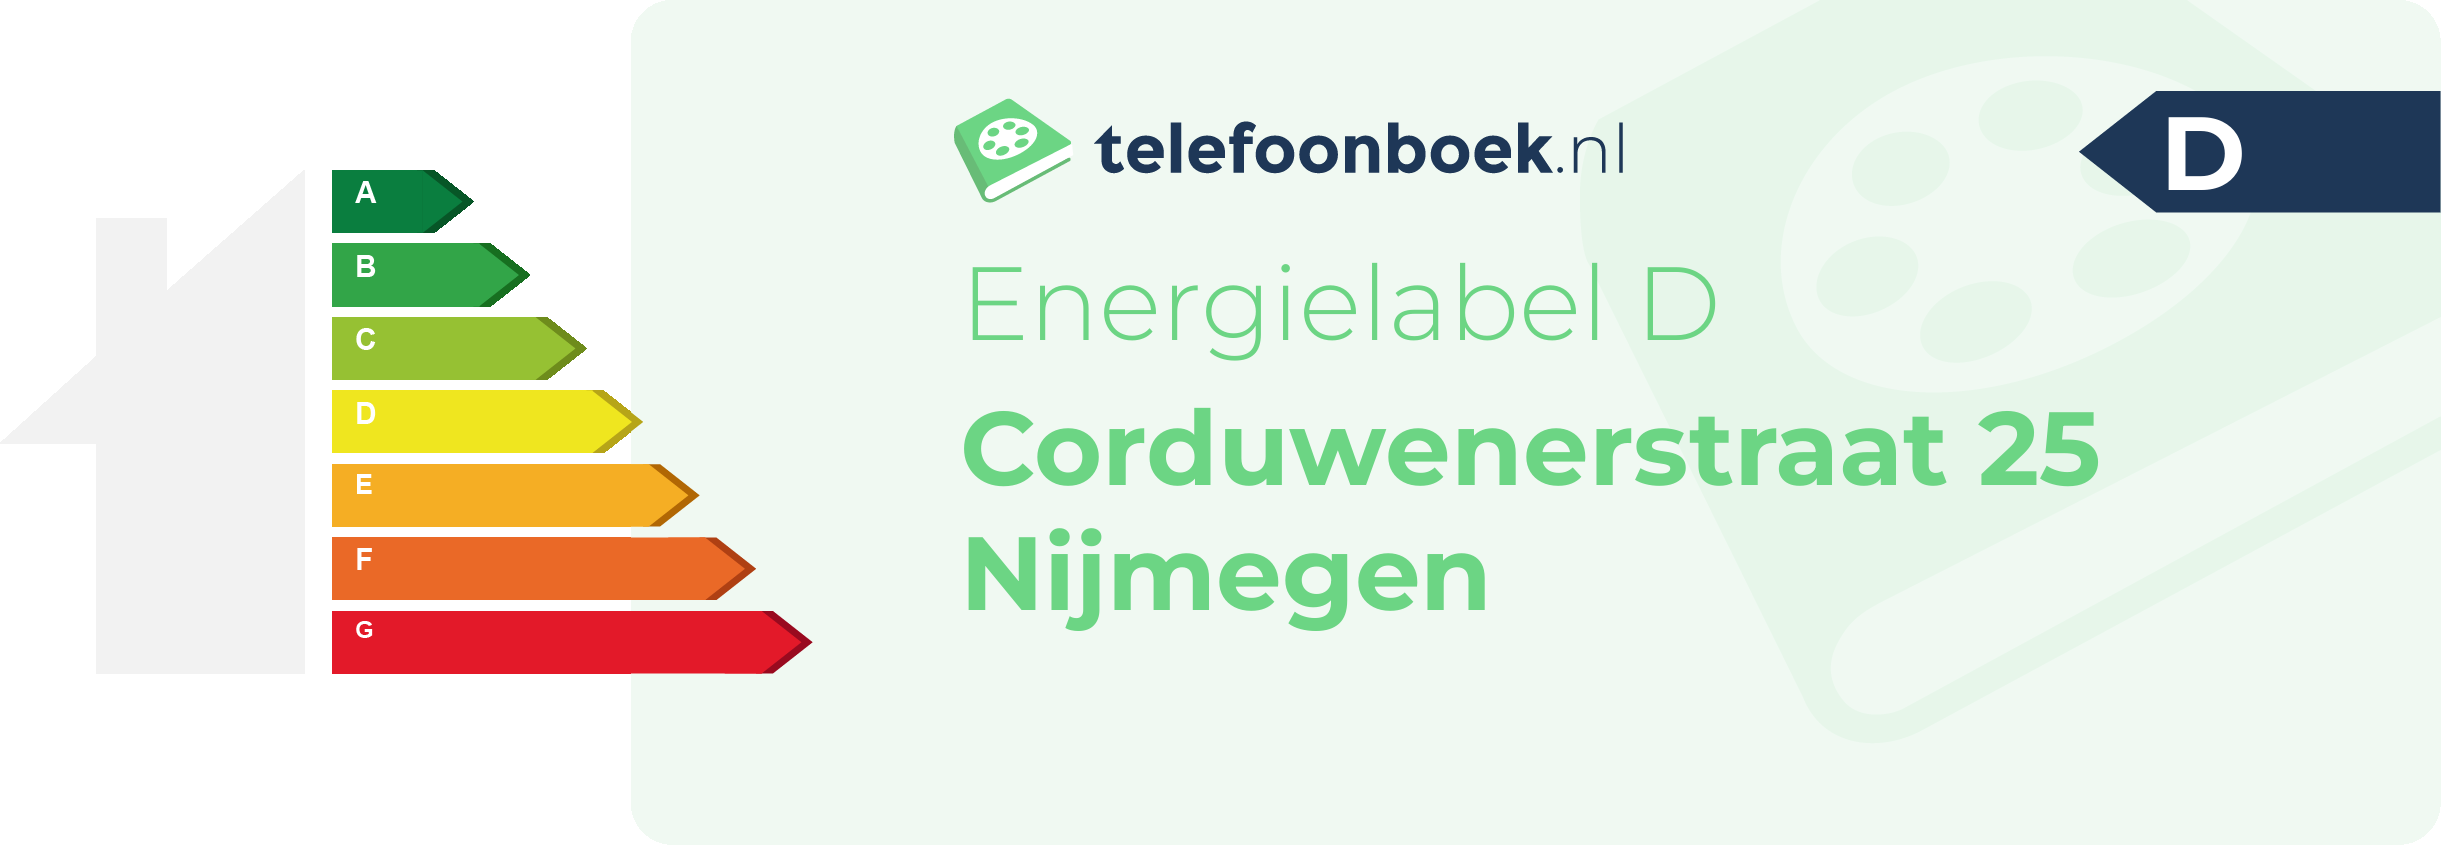 Energielabel Corduwenerstraat 25 Nijmegen